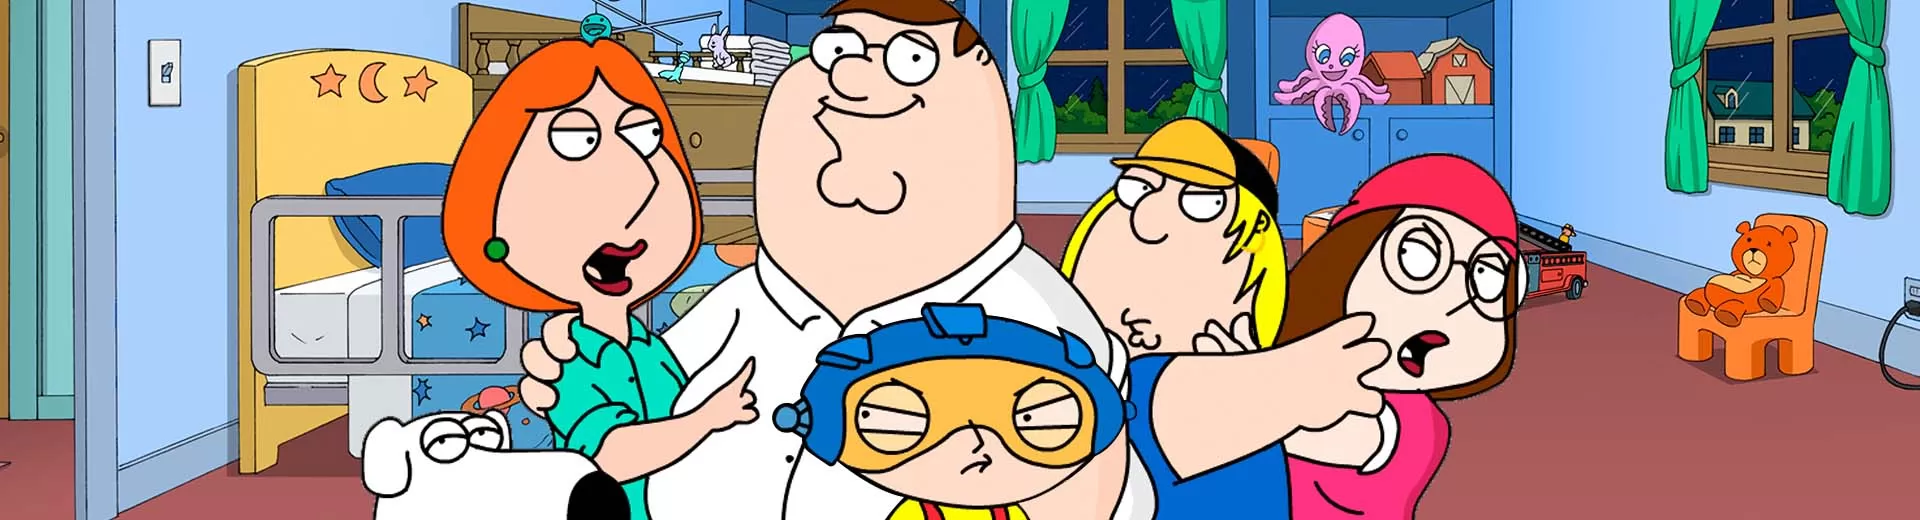 Family Guy Freakin Emulator Pc